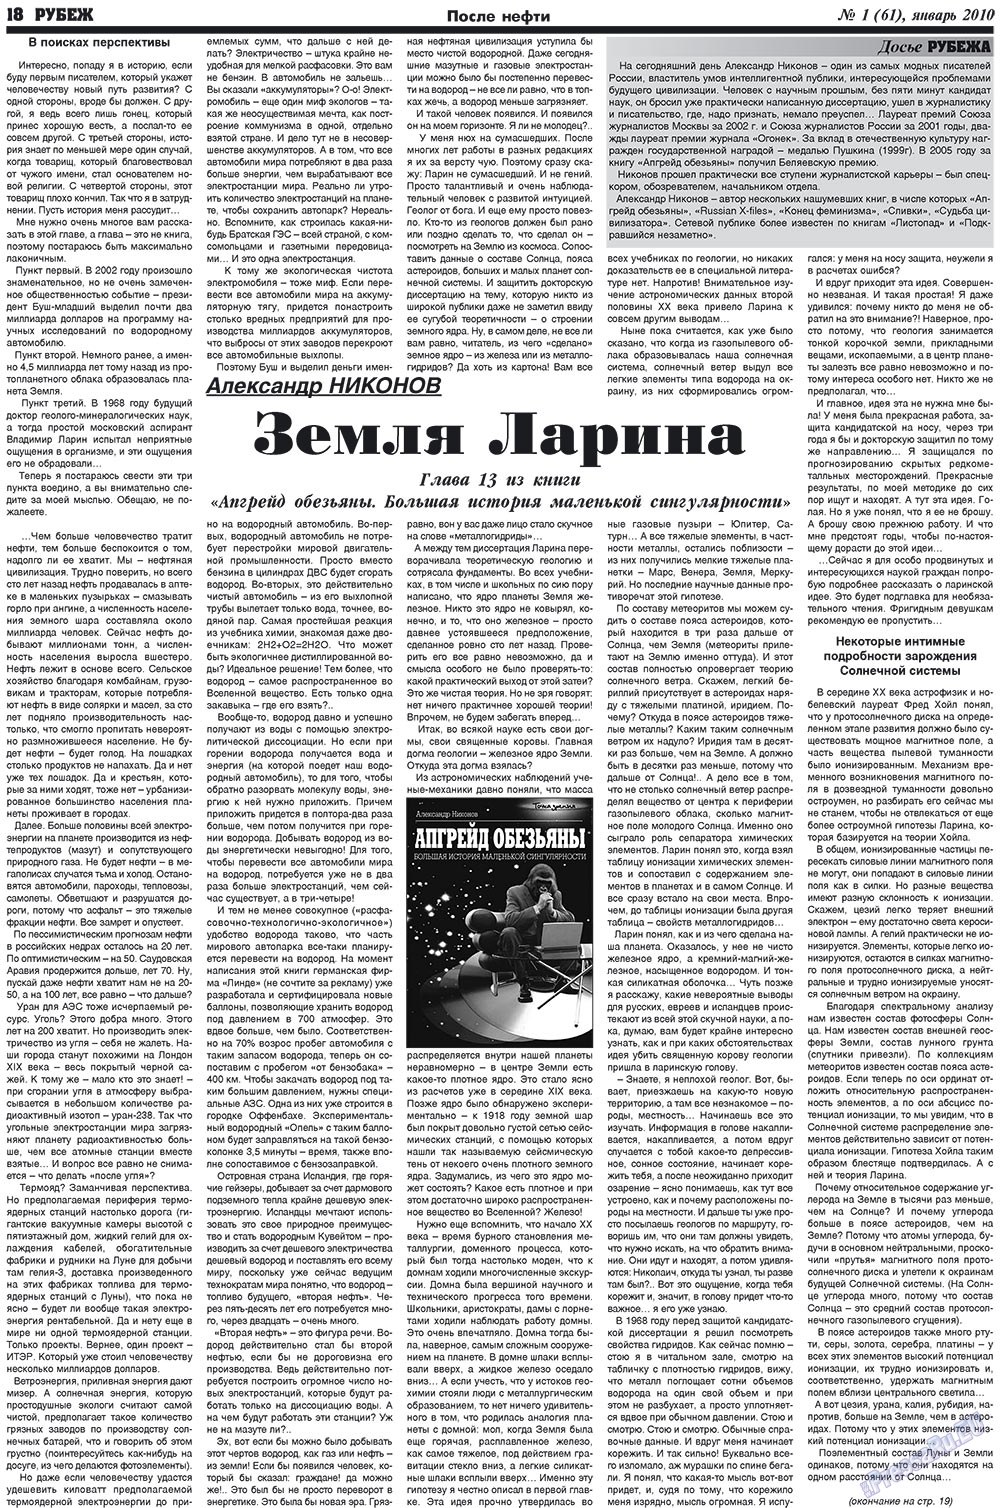 Рубеж (газета). 2010 год, номер 1, стр. 18